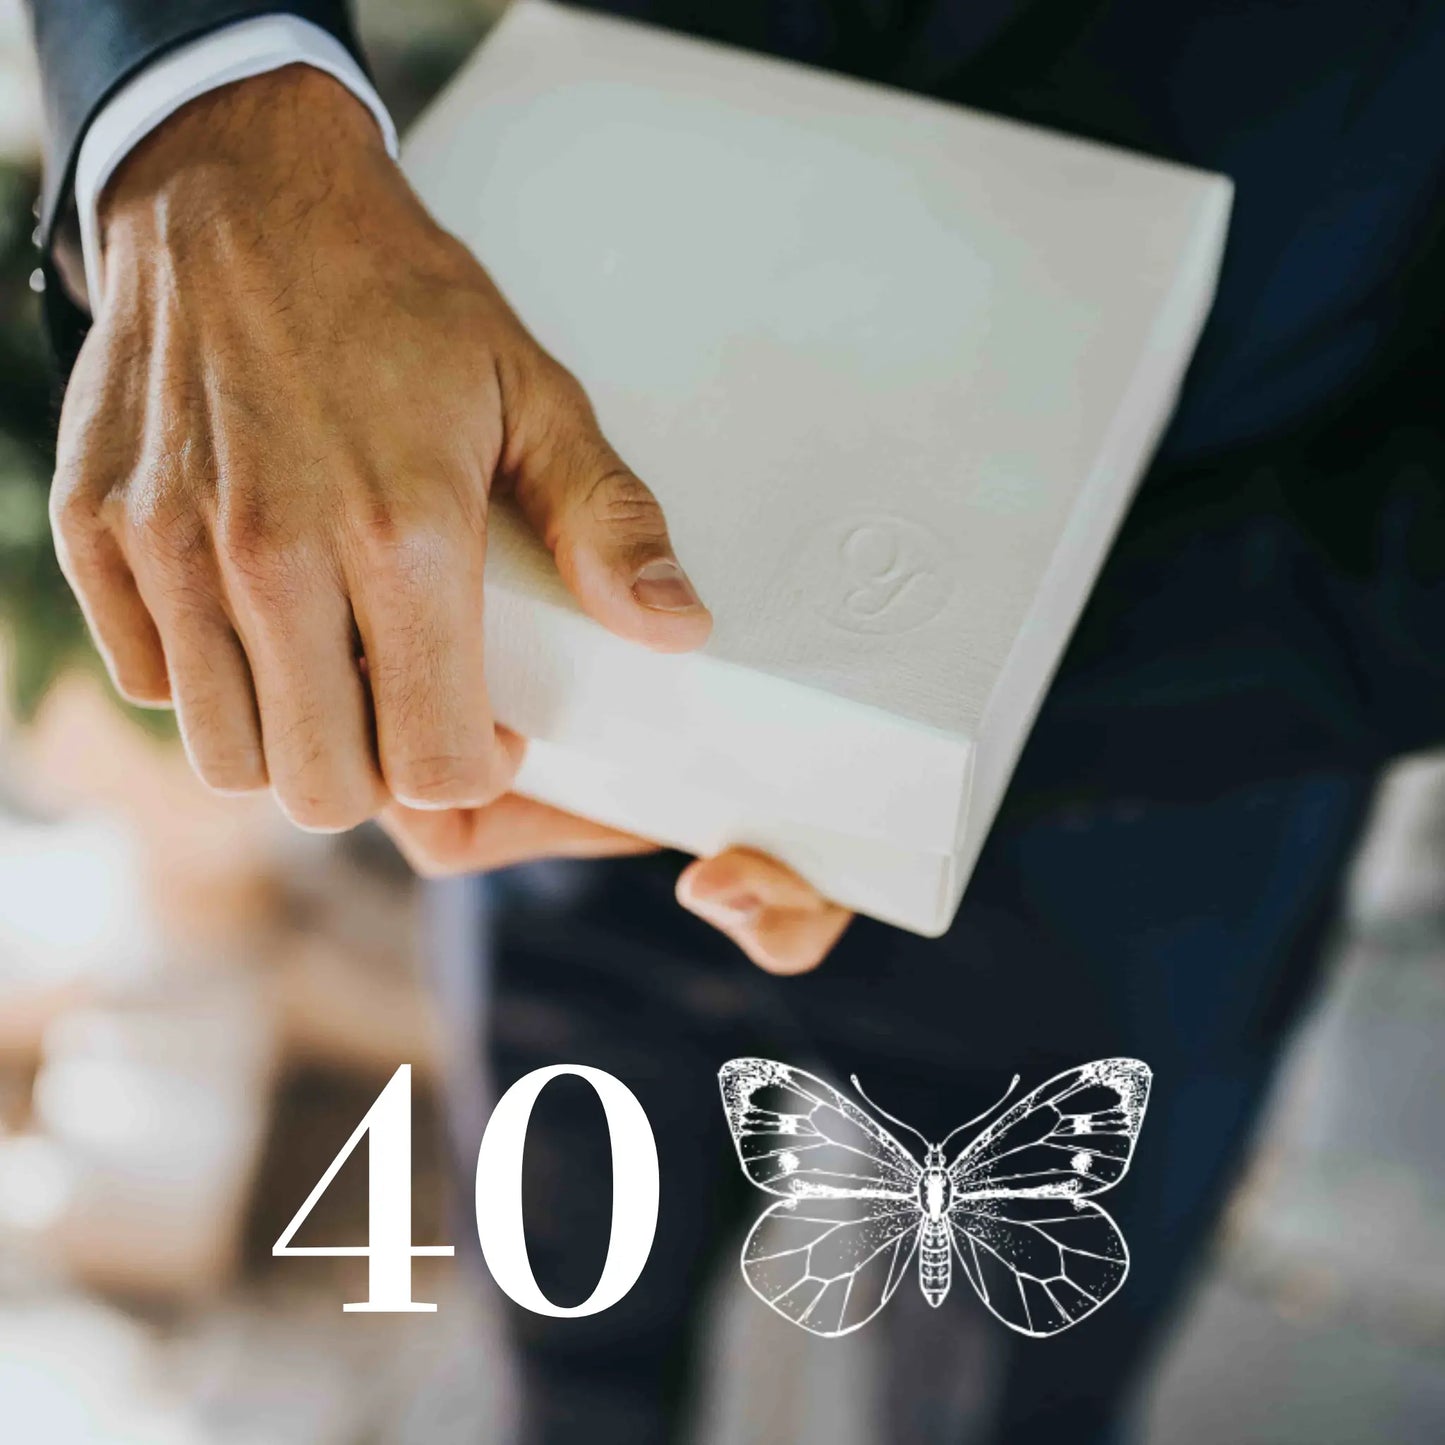 40 mariposas blancas vivas para liberar en vuelo en bodas u eventos especiales